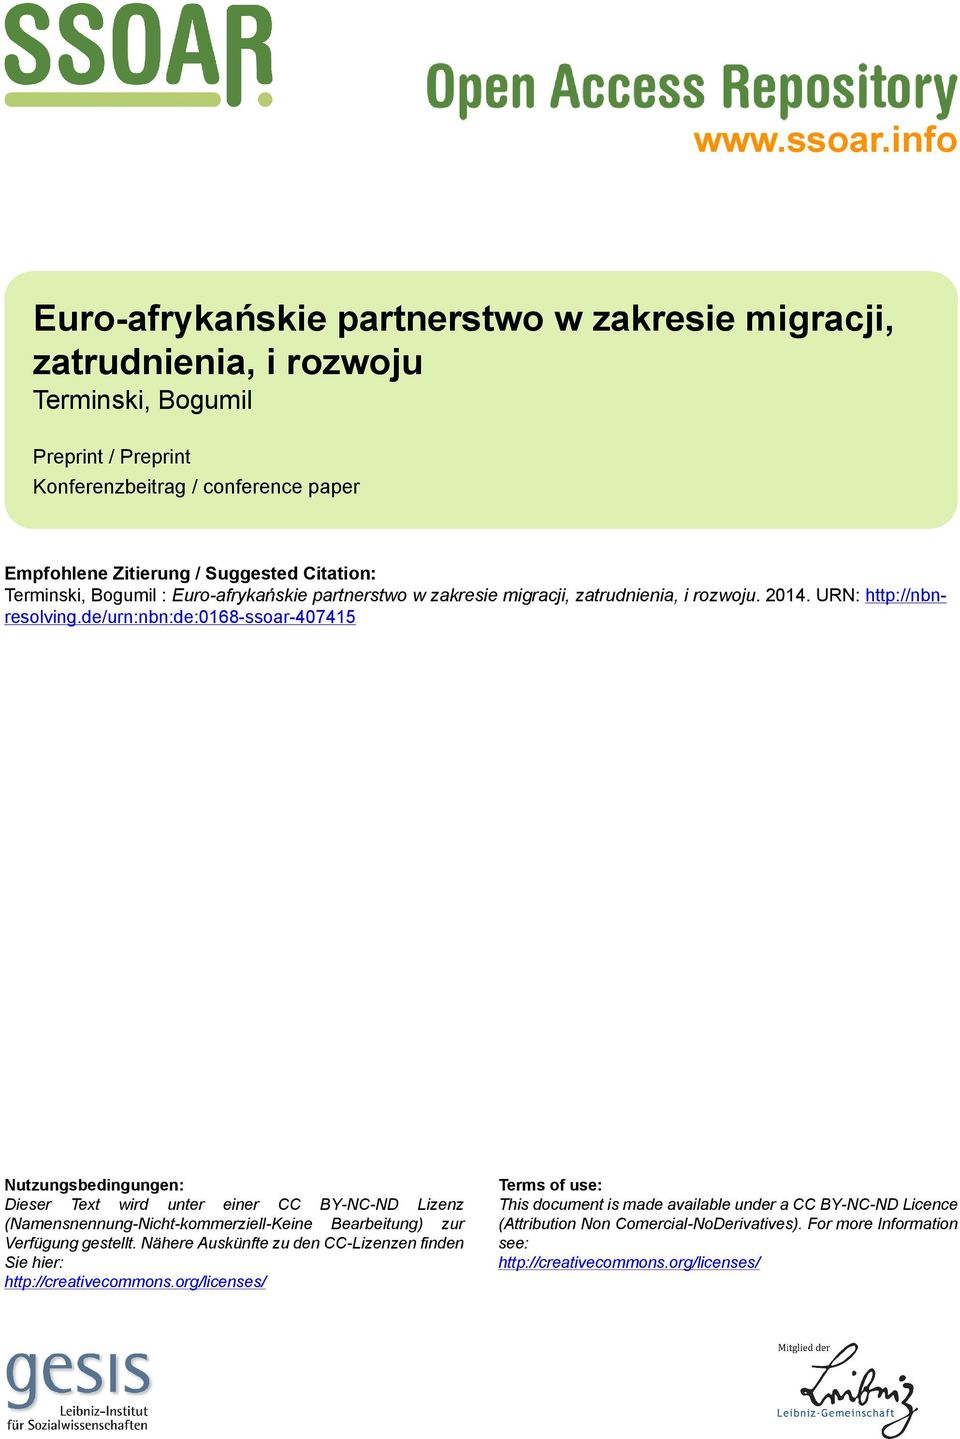 Citation: Terminski, Bogumil : Euro-afrykańskie partnerstwo w zakresie migracji, zatrudnienia, i rozwoju. 2014. URN: http://nbnresolving.